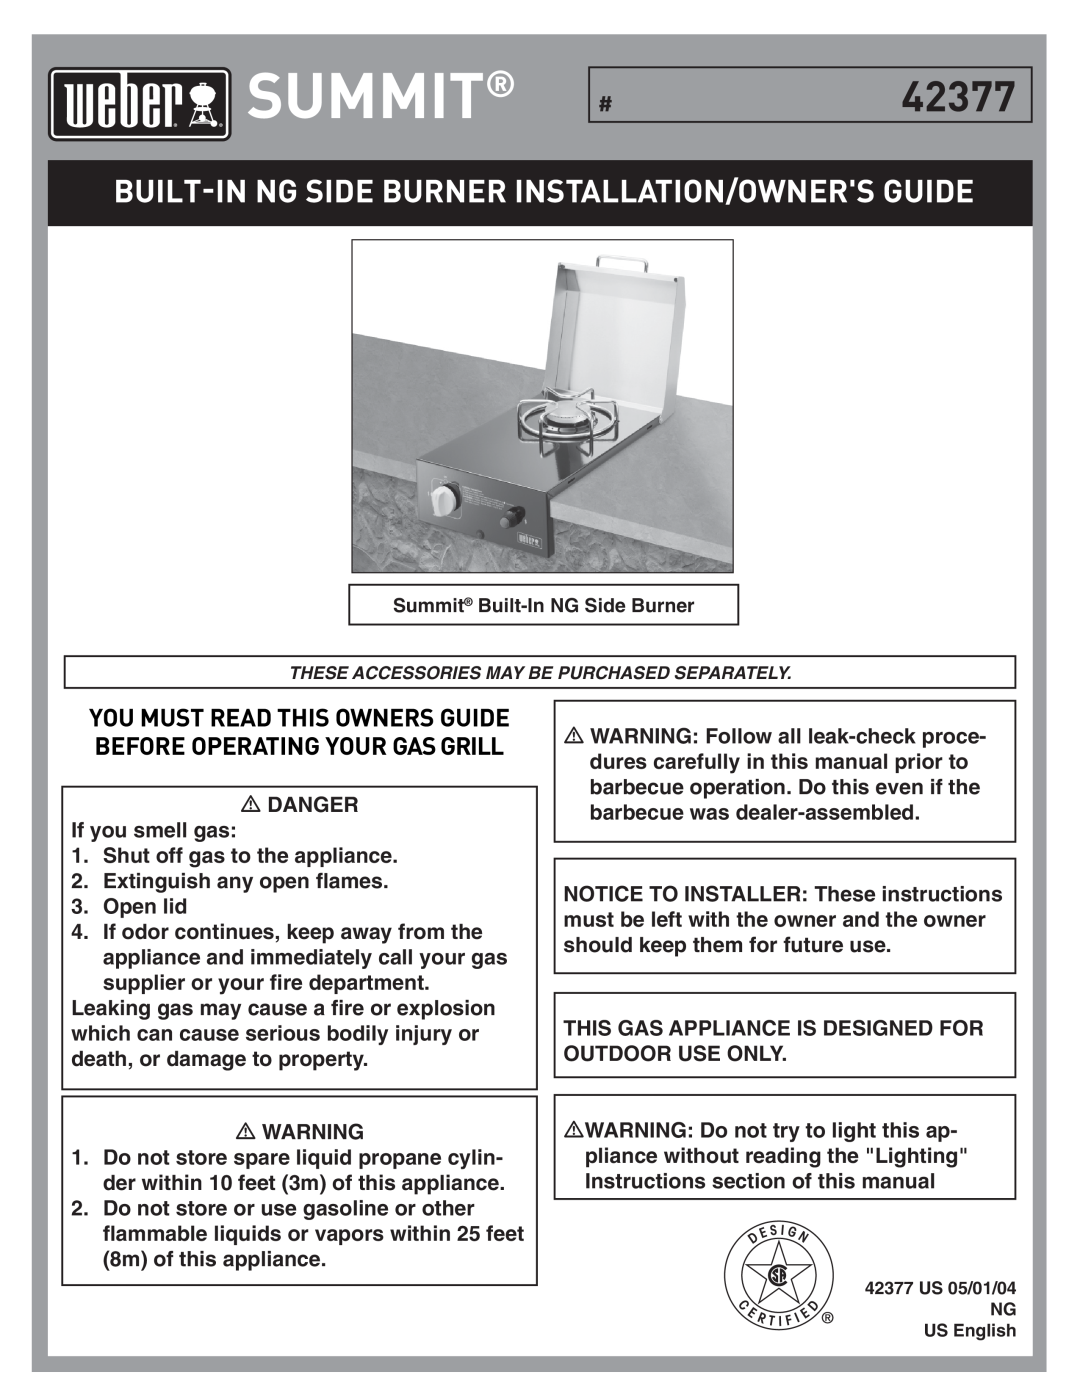 Weber Summit Built-In NG Side Burner manual Built-Inng Side Burner Installation/Owners Guide, DANGER If you smell gas 